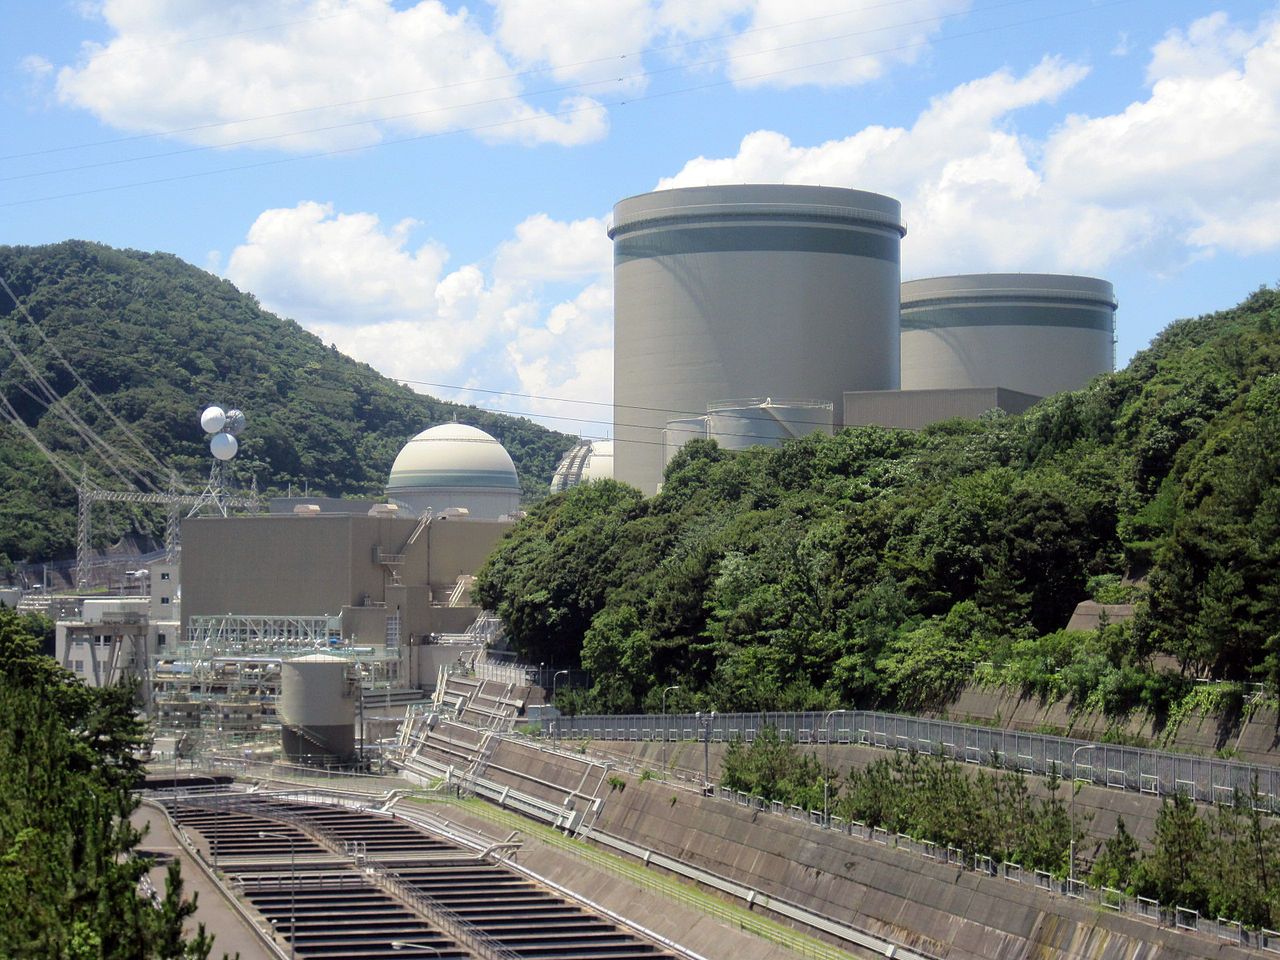 nucleaire japon prolonge duree vie reacteurs au-dela 60 ans - L'Energeek